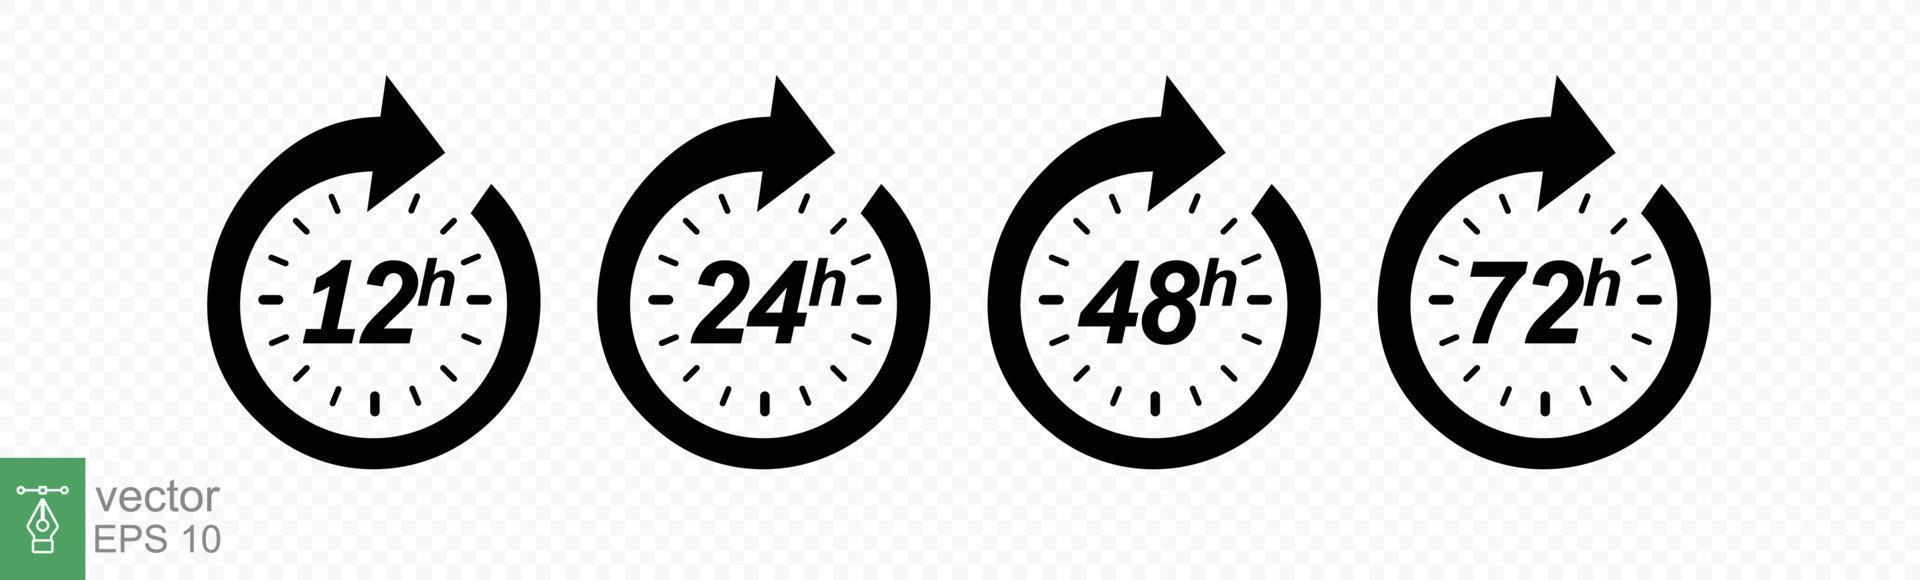 jeu d'icônes d'heure. Flèche d'horloge de 12, 24, 48 et 72 heures. livraison rapide, minuterie avec flèche circulaire. effet de temps de travail vectoriel ou icônes de temps de service de livraison. ep 10.